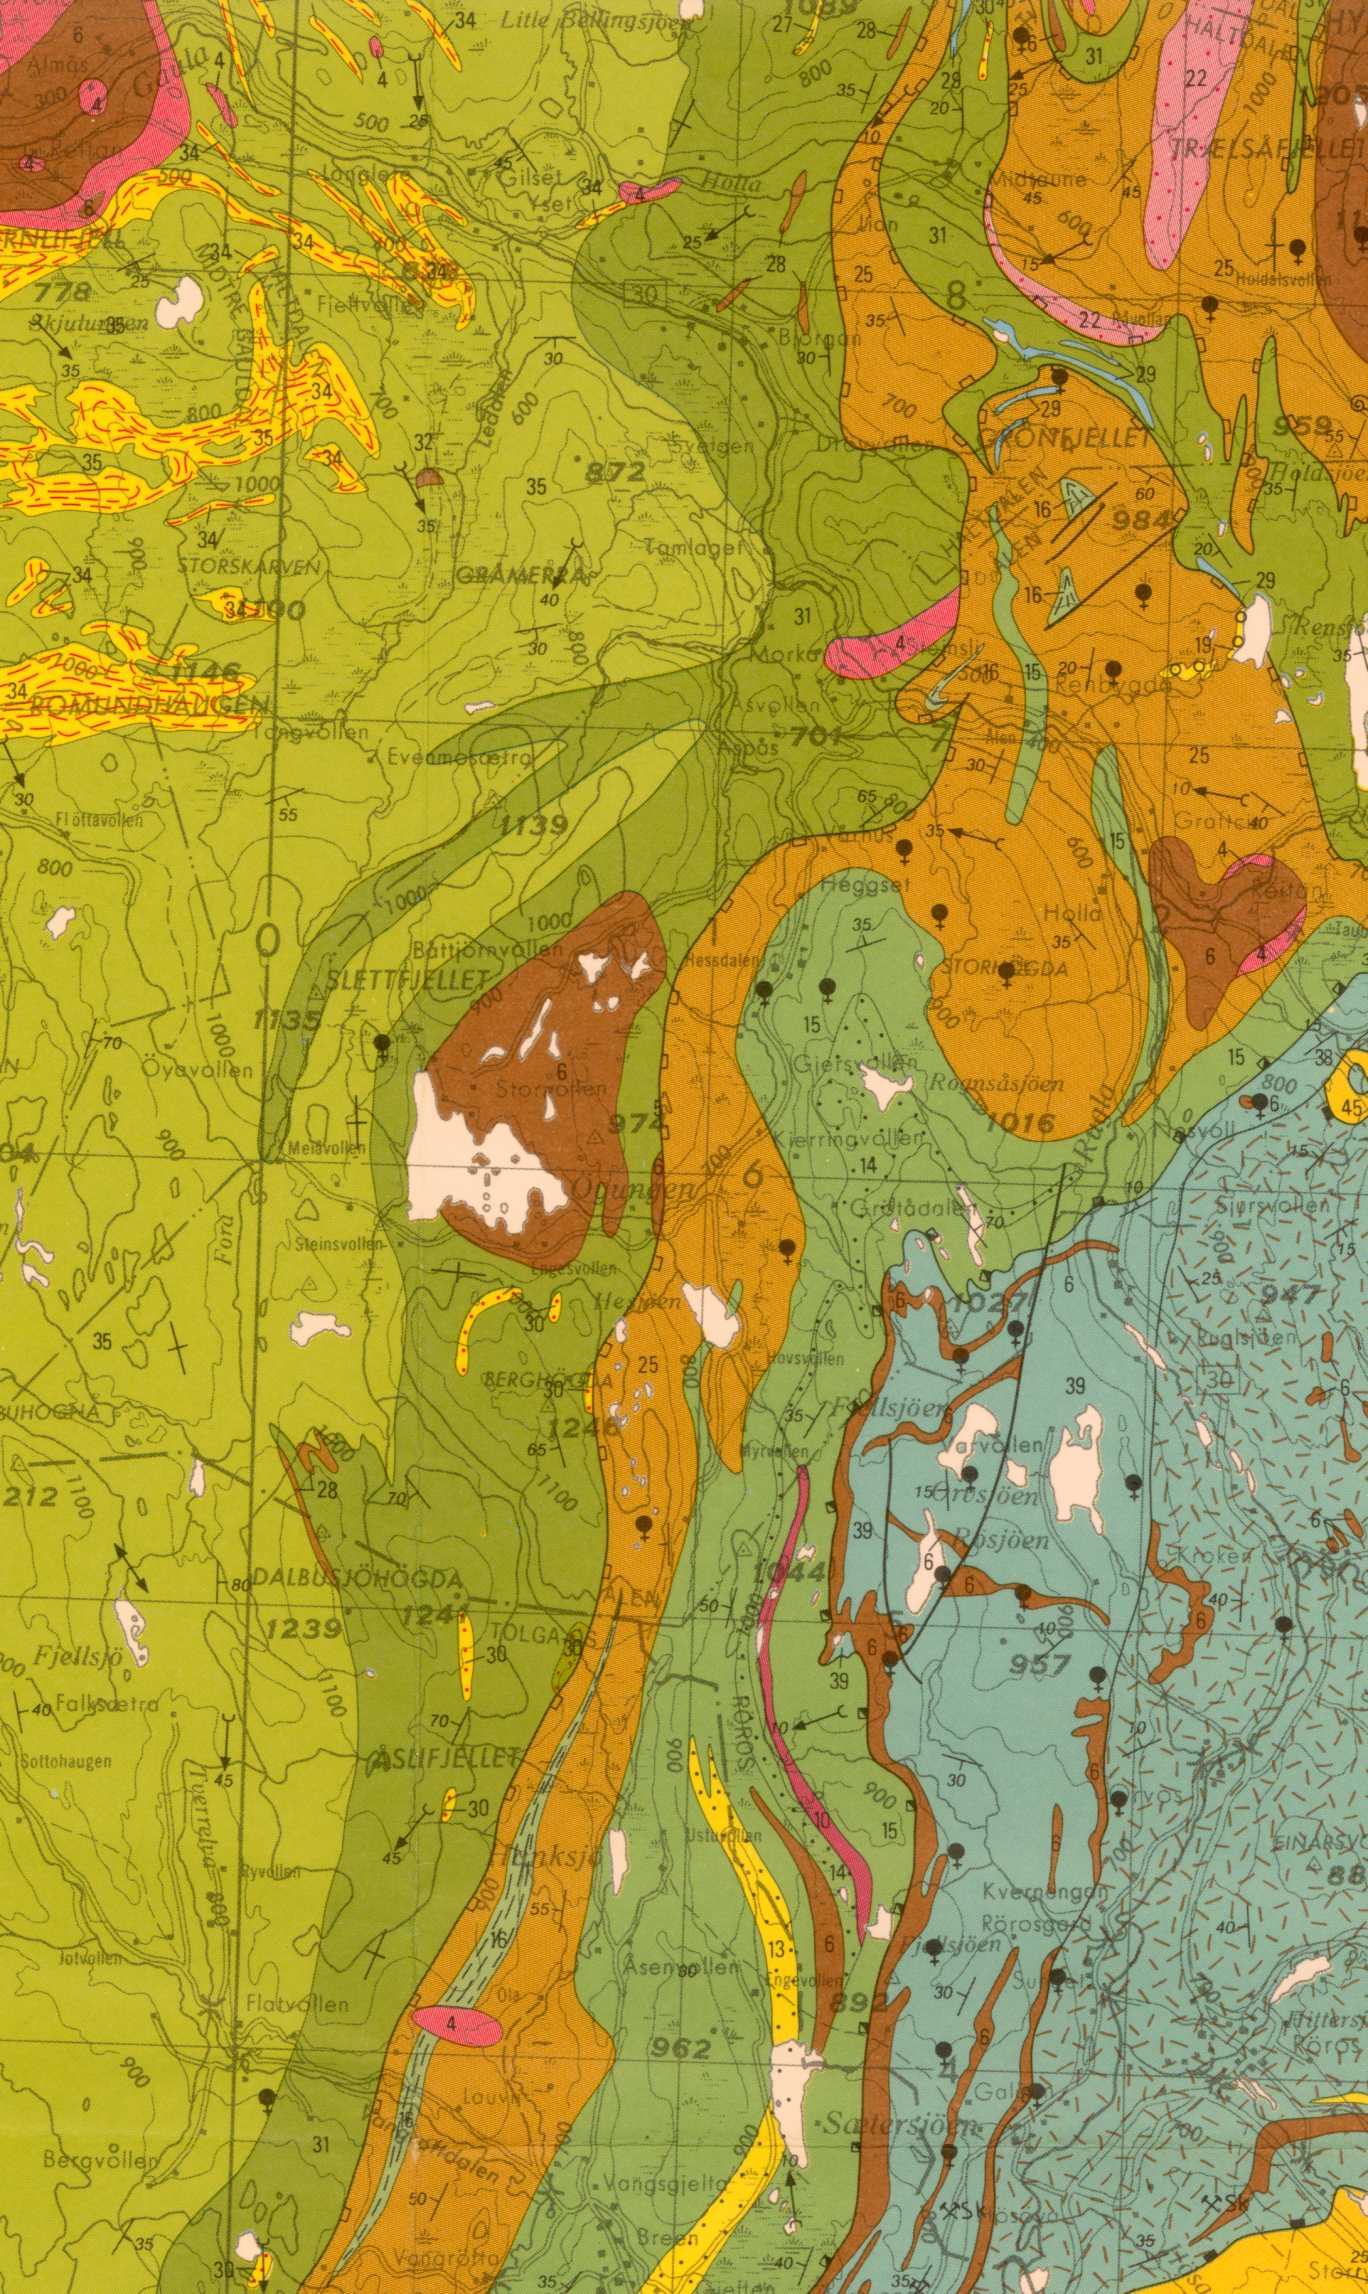 Berggrunns kart over Hessdalsdistriktet